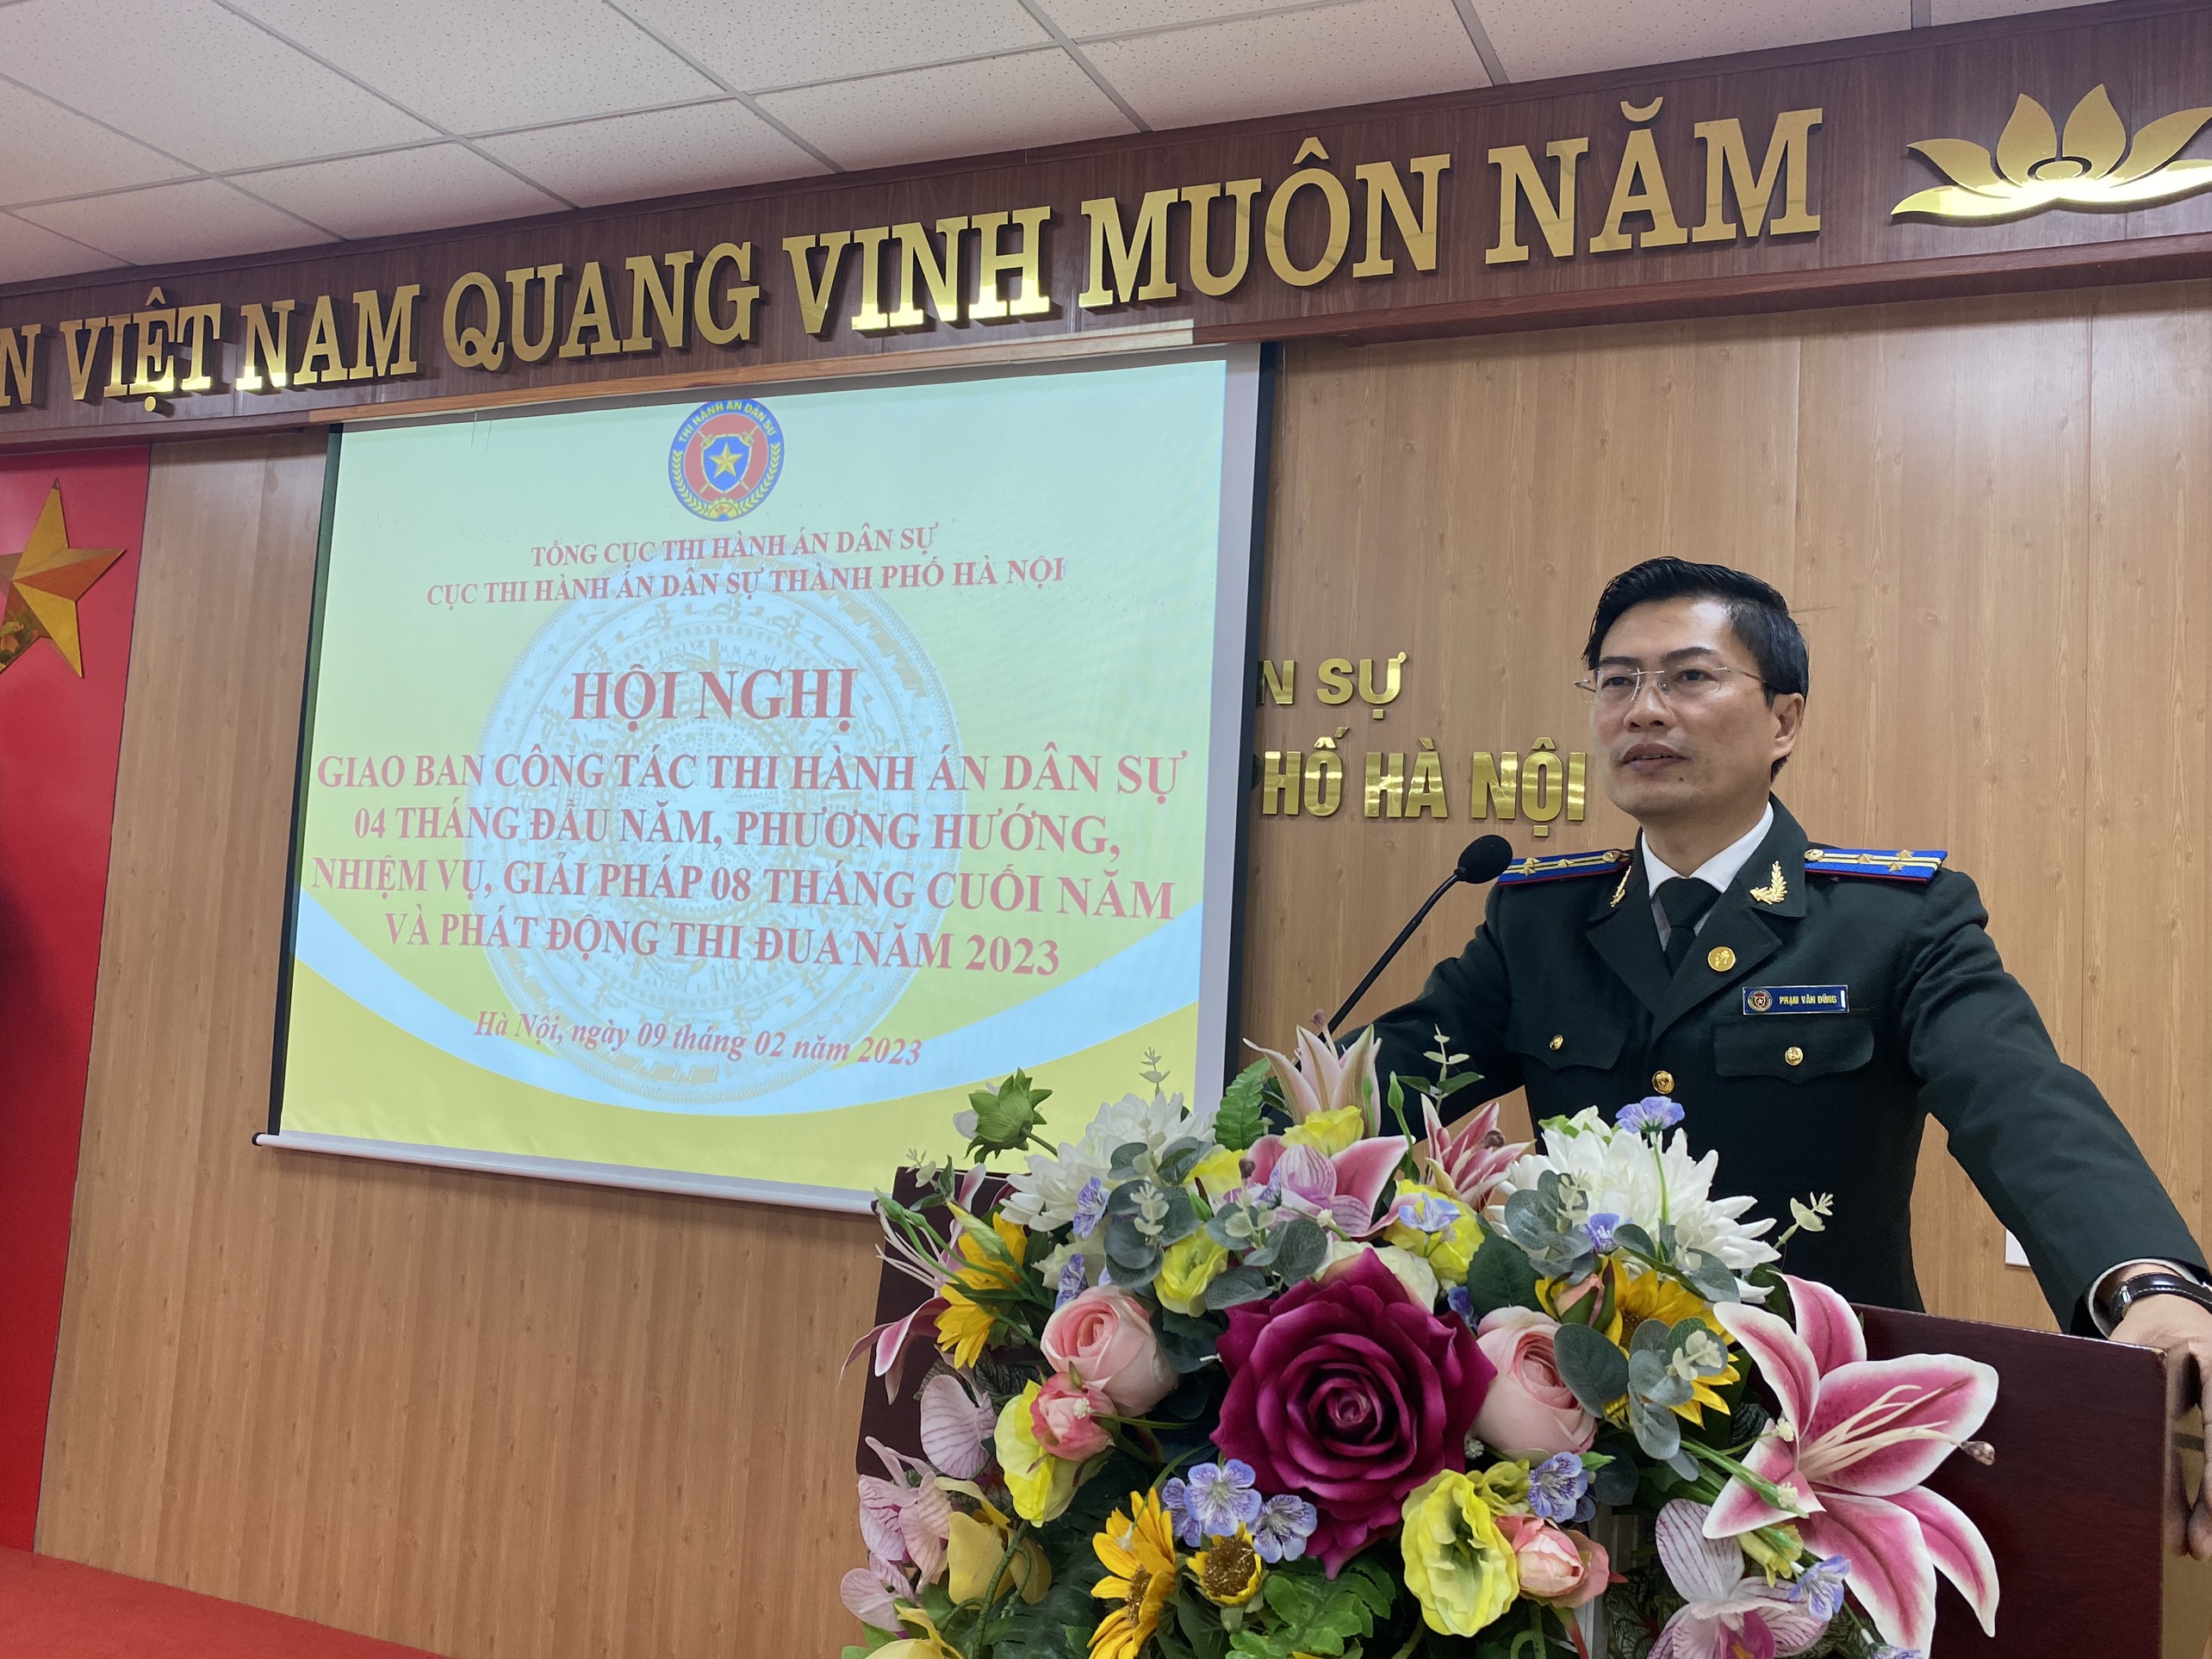 Cục Thi hành án dân sự thành phố Hà Nội tổ chức Hội nghị  giao ban công tác THADS 04 tháng đầu năm và phương hướng, nhiệm vụ,  giải pháp công tác 08 tháng cuối năm 2023